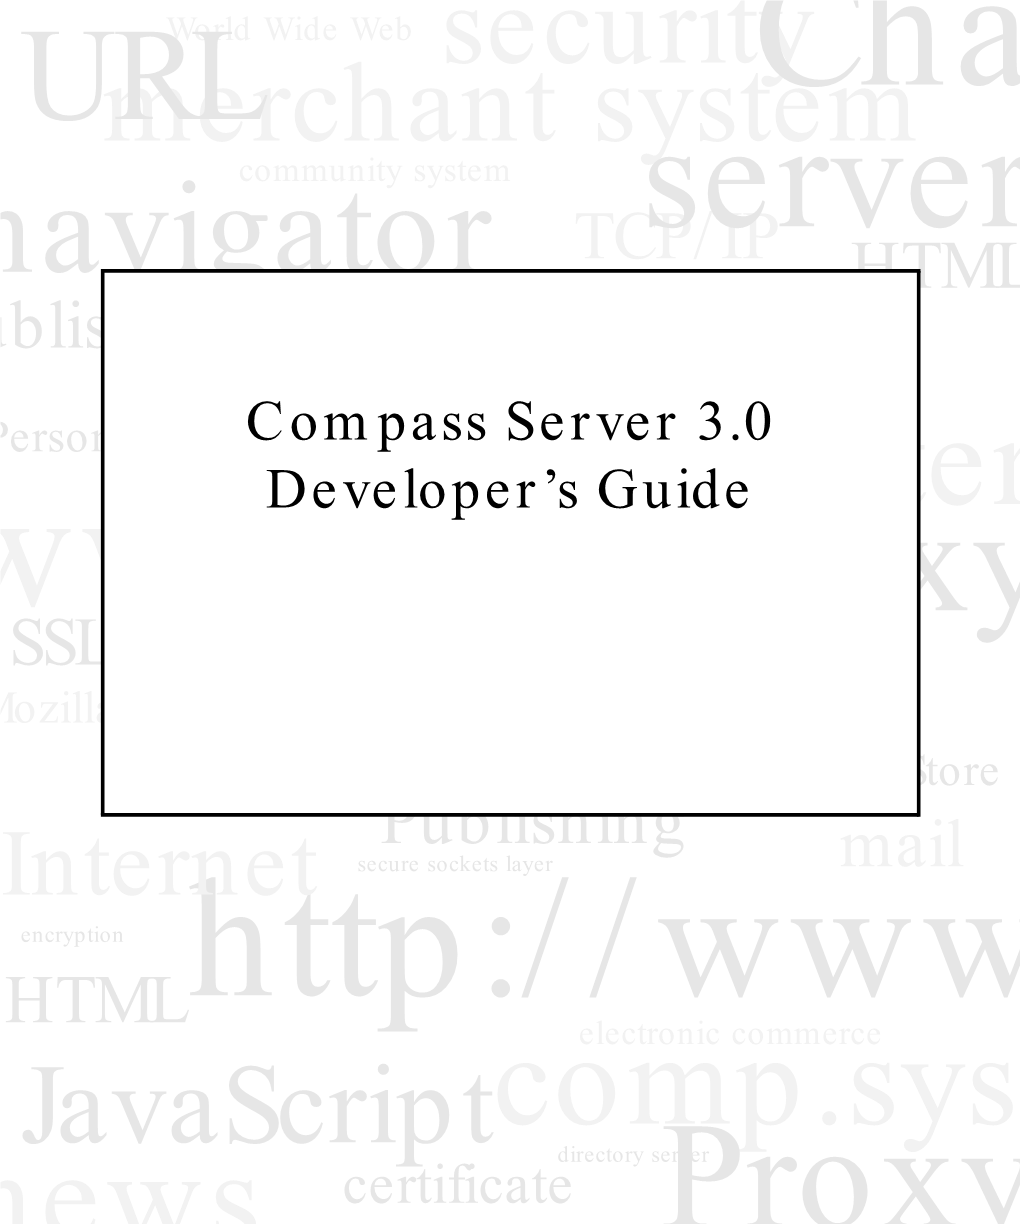 Compass Server 3.0 Developer's Guide